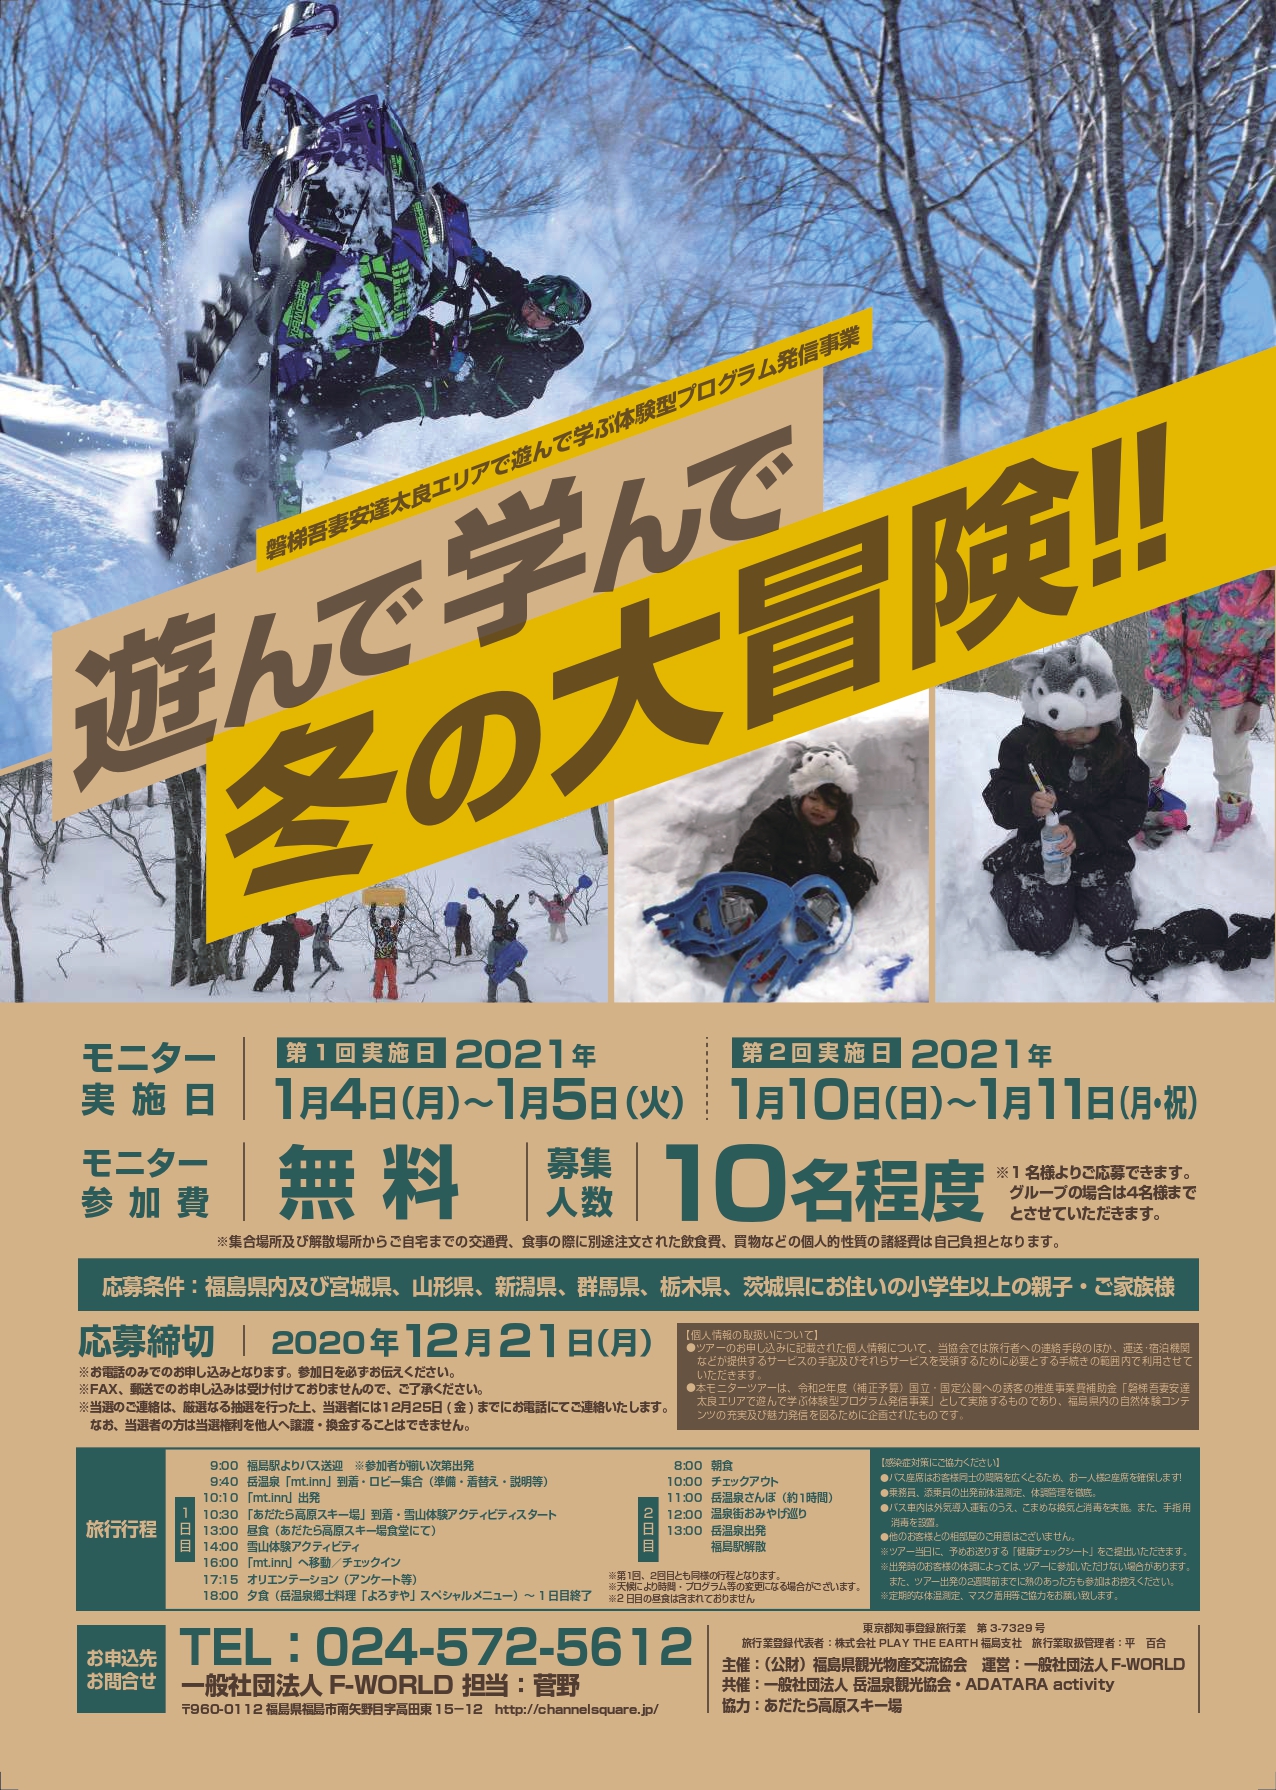 締切雪山体験アクティビティモニターツアー開催決定！   岳温泉観光